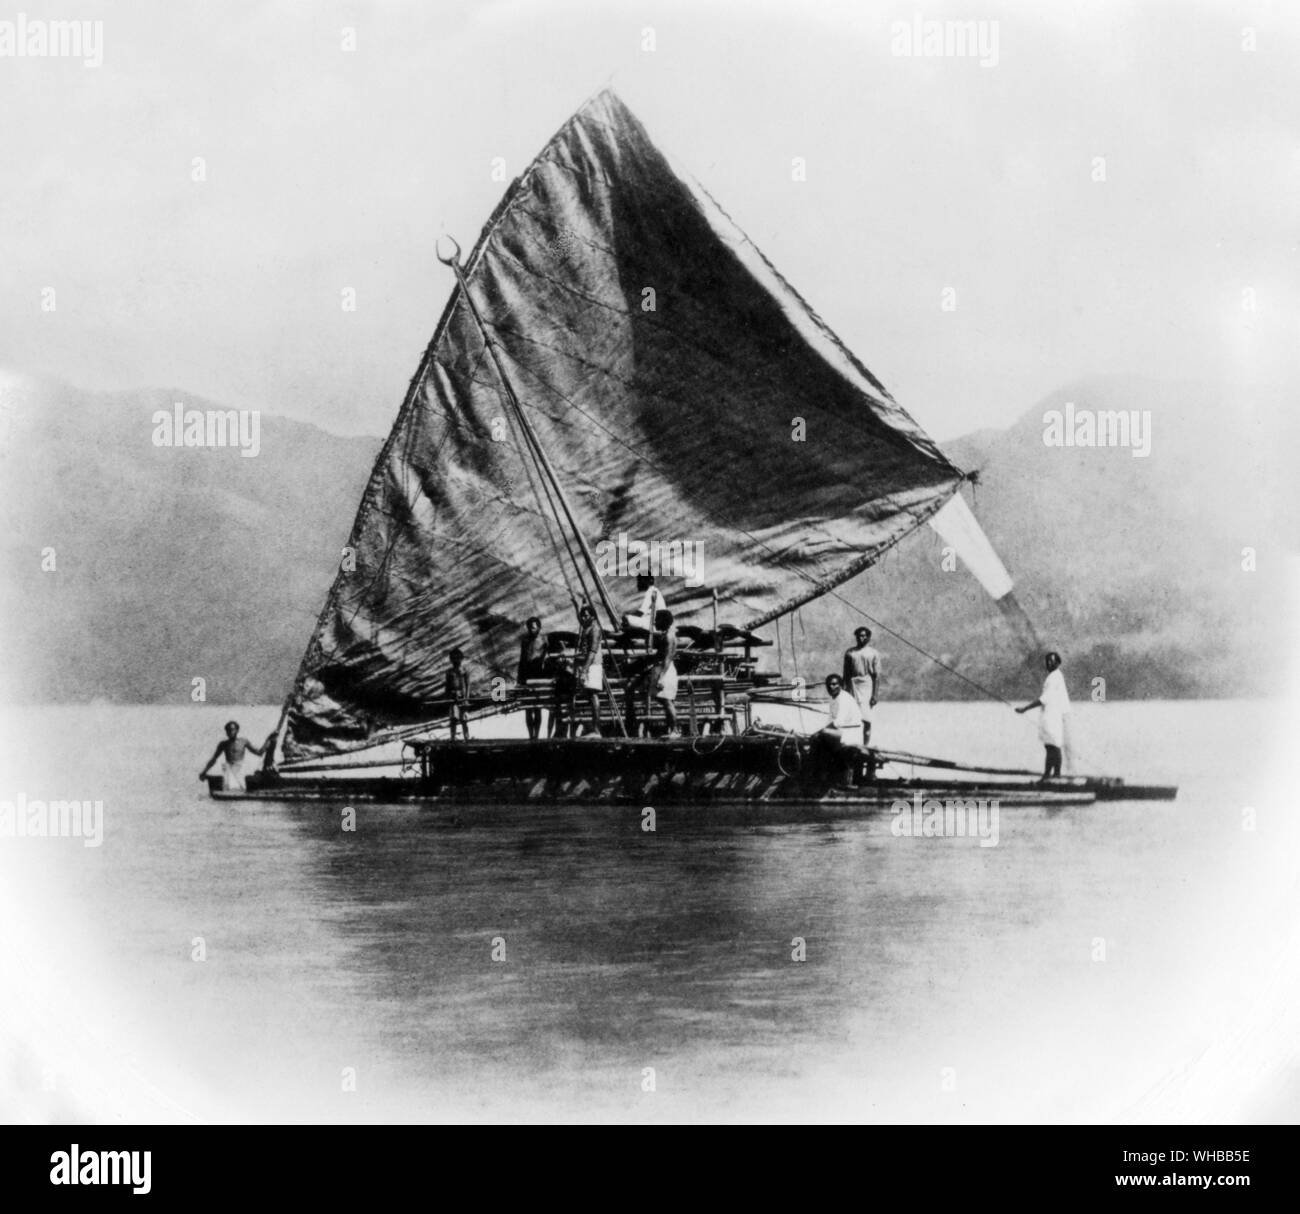 Canoë - fidjien du rapport des résultats scientifiques de l'exploration de voyage du HMS Challenger pendant les années 1873 - 1876.. Banque D'Images